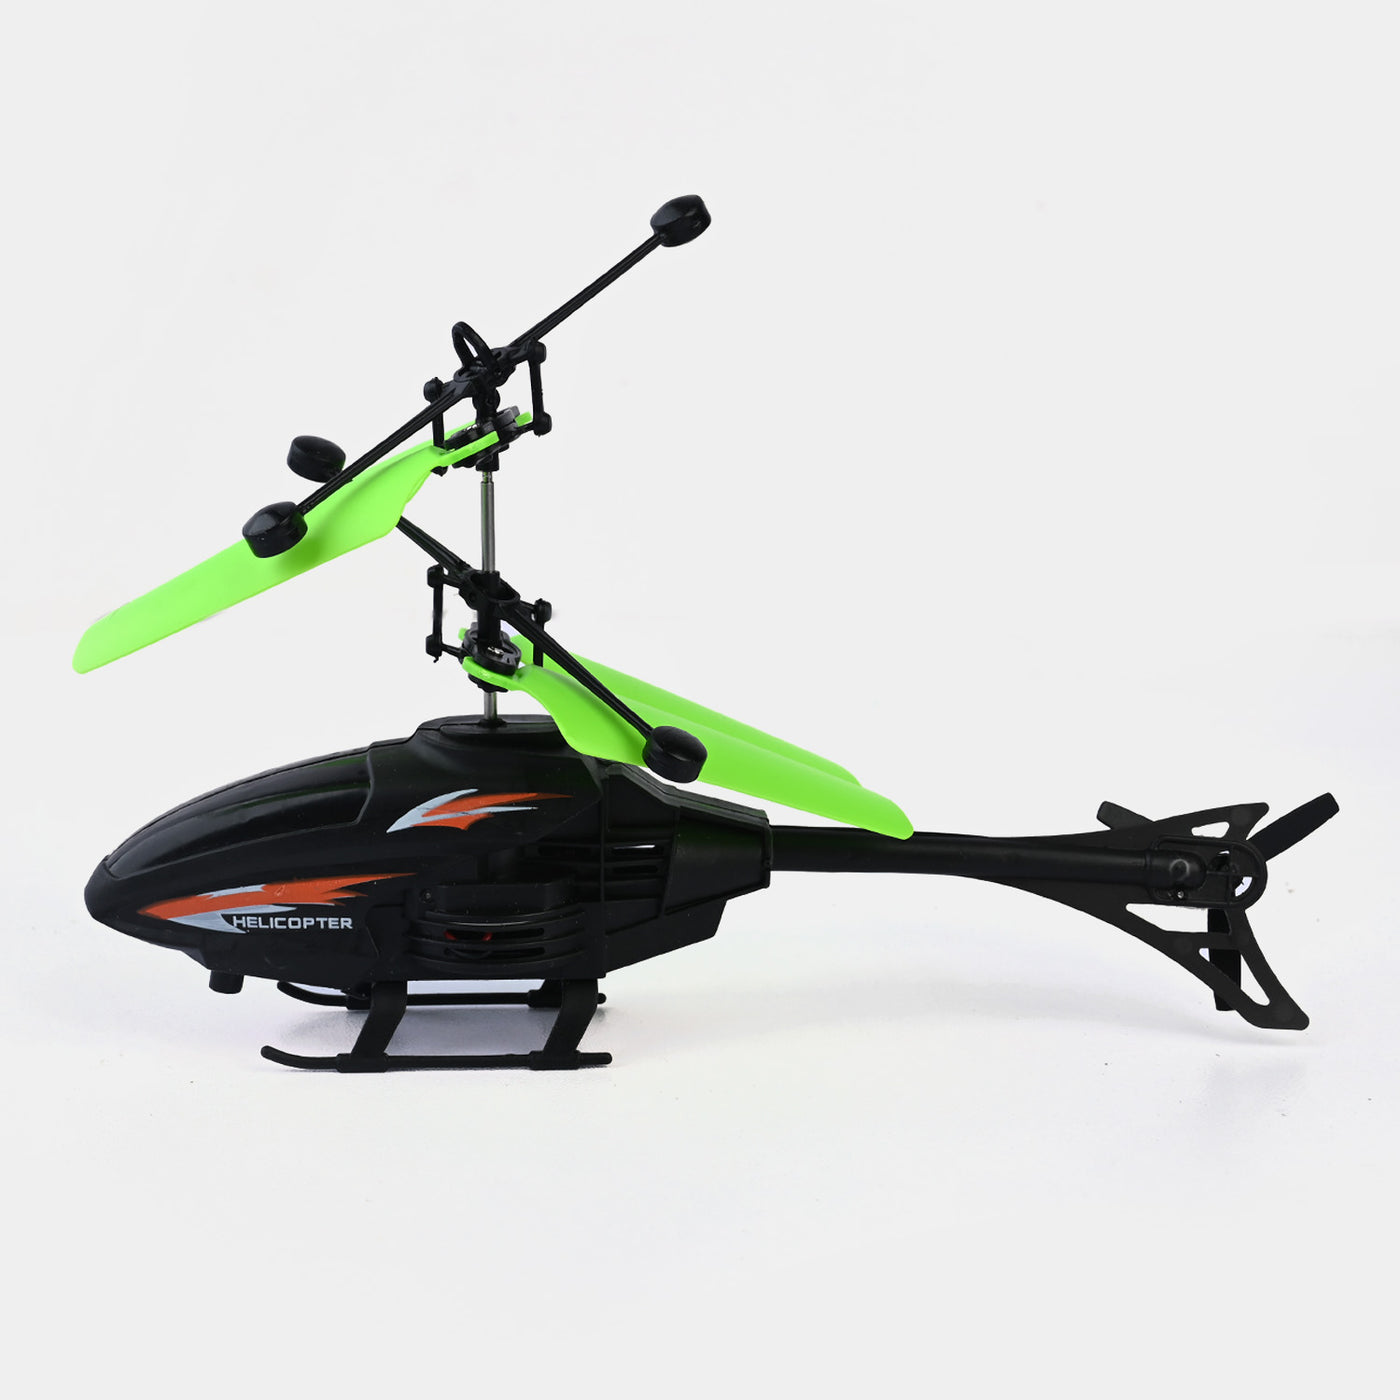 Helicopter Copter Sensor Toy For kids - Black